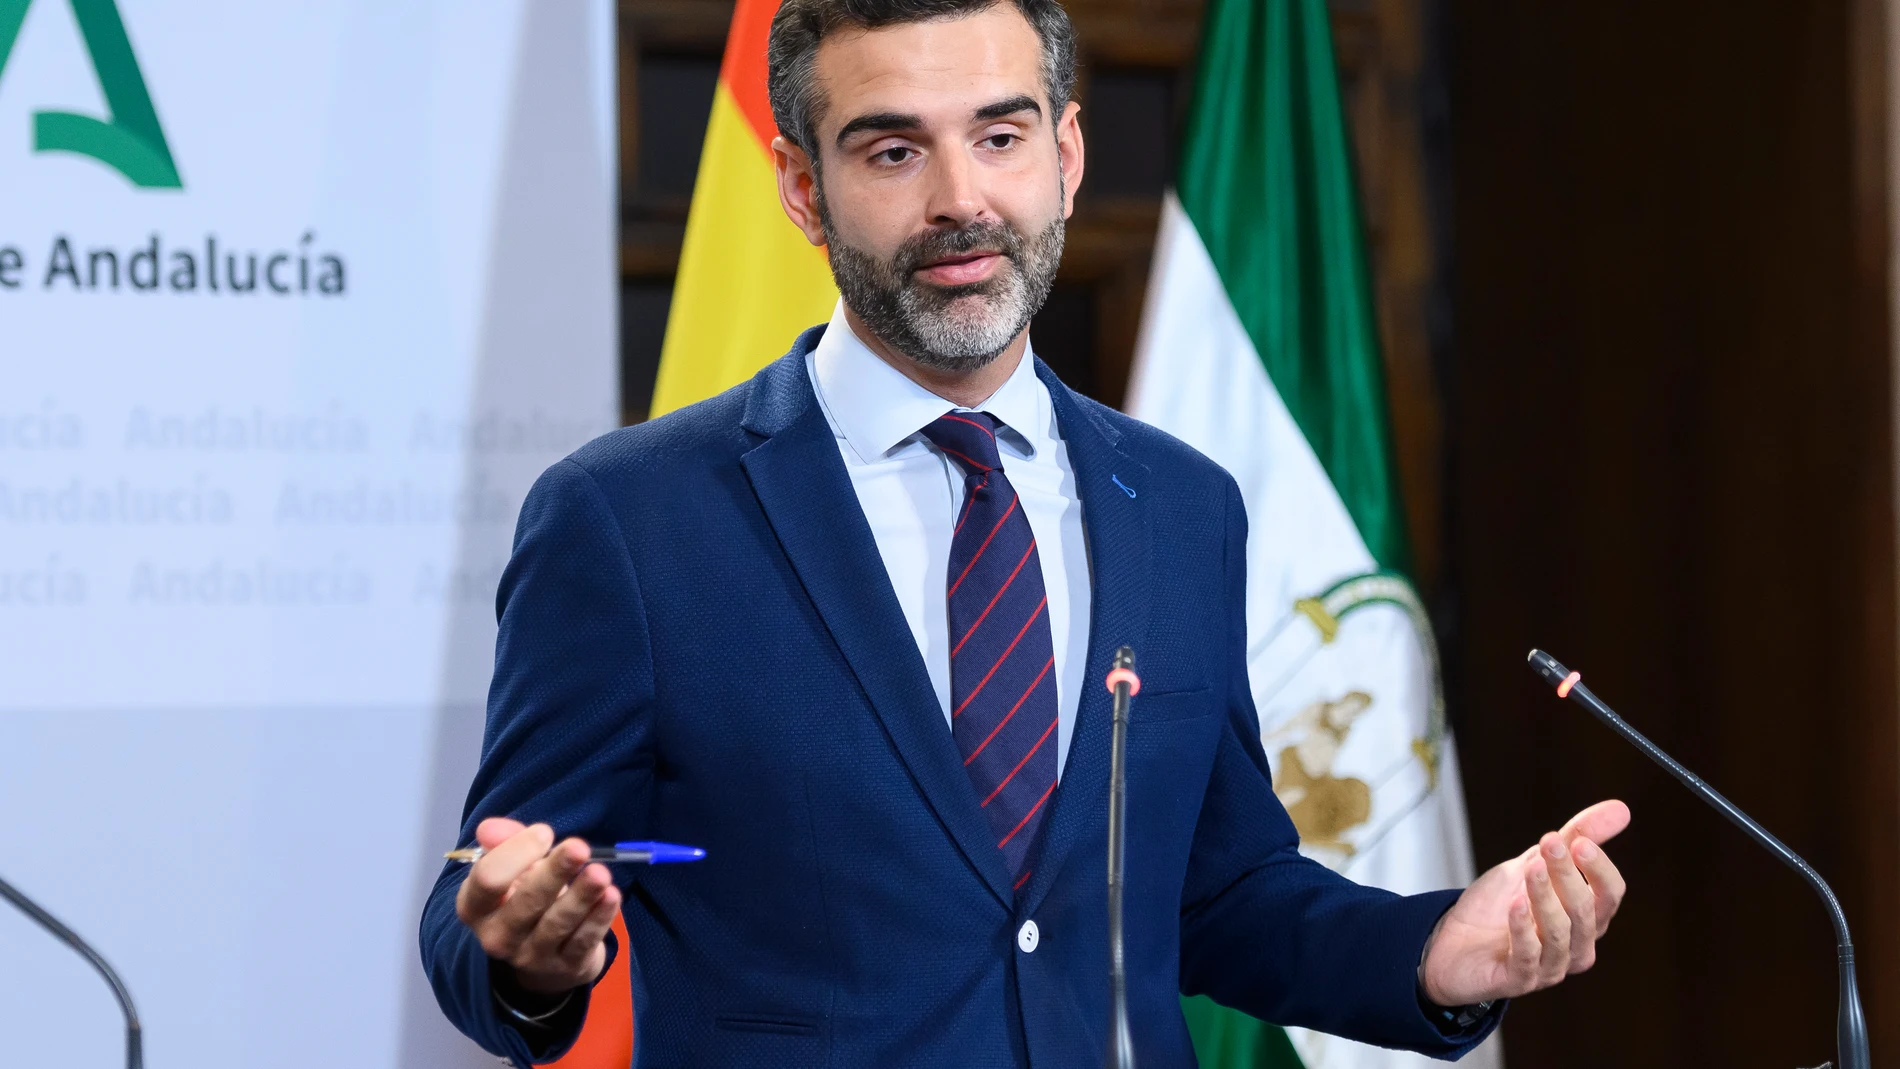 El portavoz del Gobierno andaluz, Ramón Fernández-Pacheco, en la rueda de prensa tras la reunión del Consejo de Gobierno